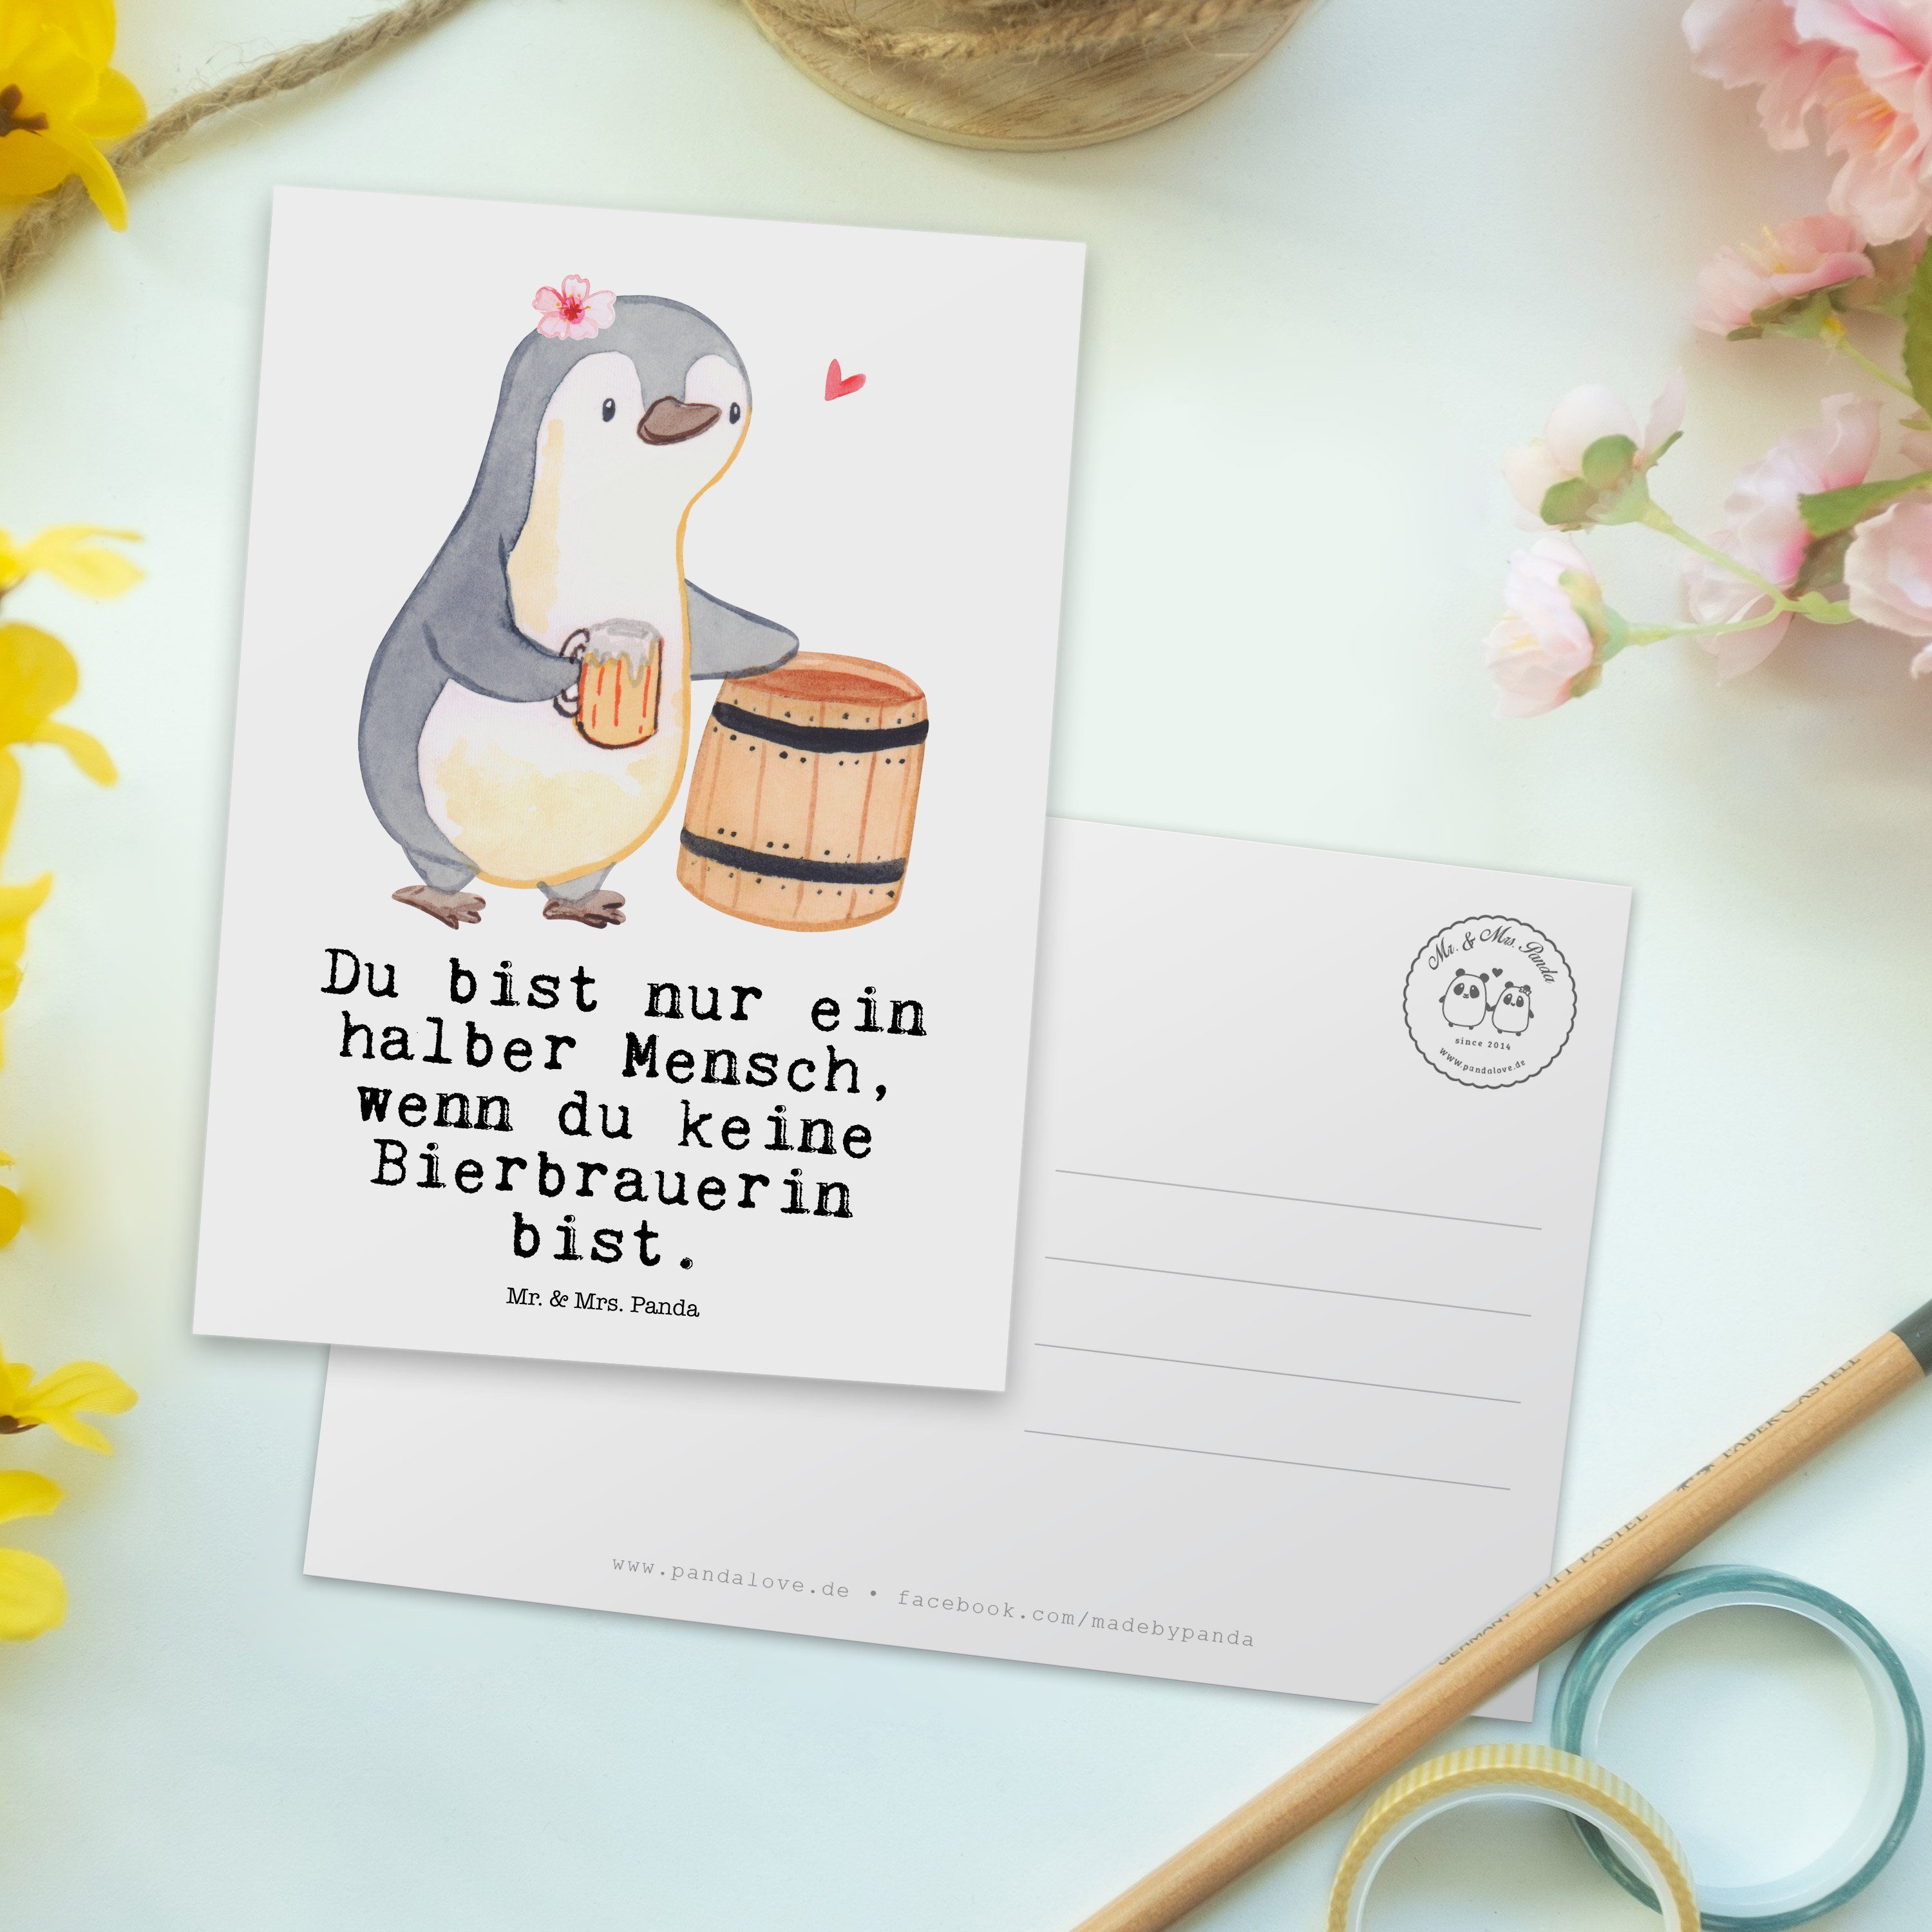 Mr. & Mrs. Panda Danke, Weiß Postkarte mit Herz Einl Bierbrauerin - - Geschenk, Einladungskarte